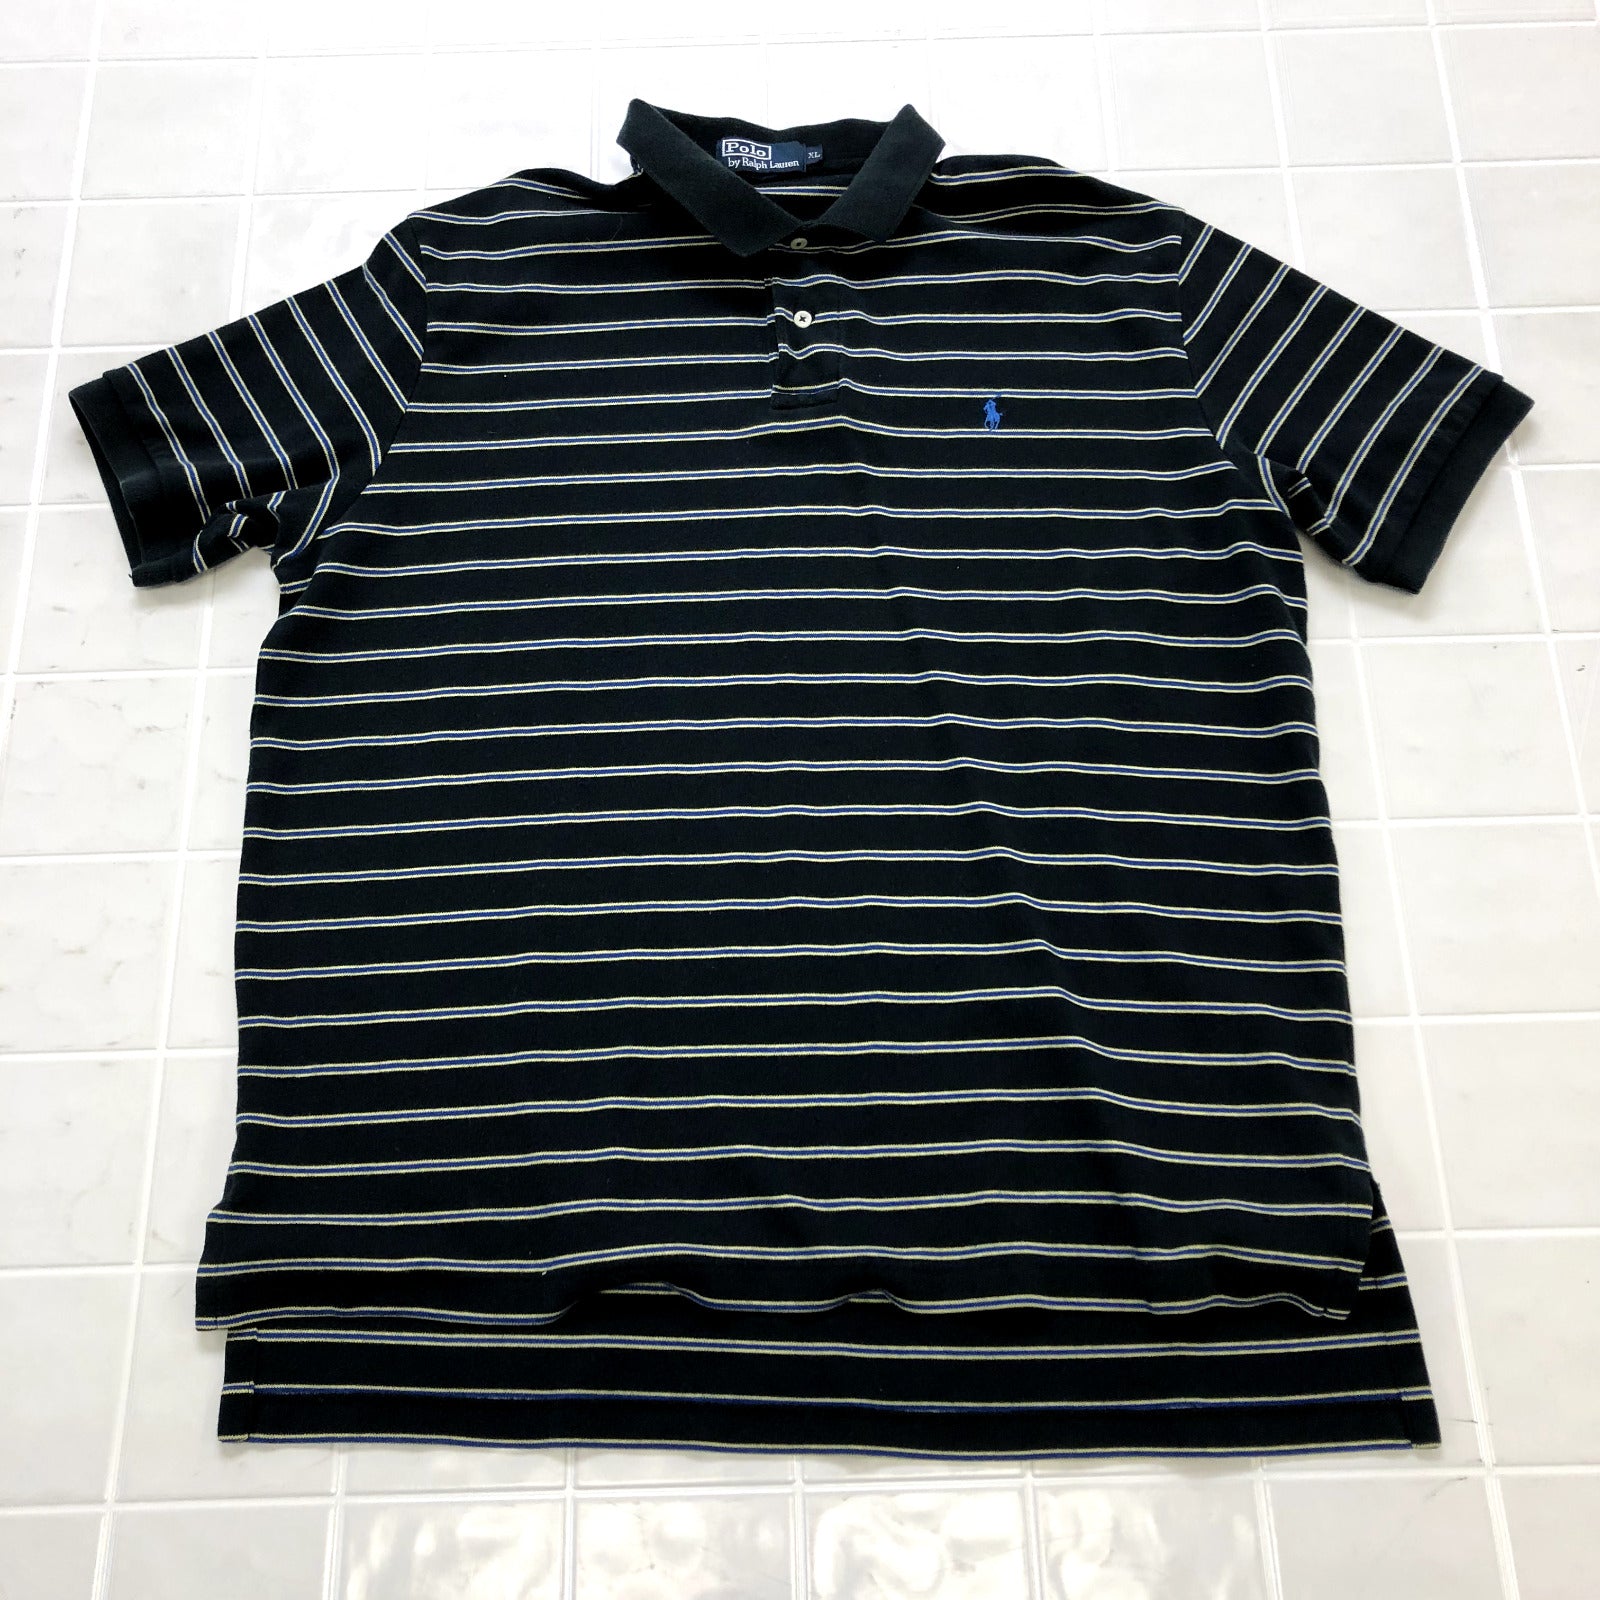 Polo Ralph Lauren Black Multicolor Stripe Cotton Polo Shirt Adult Size XL